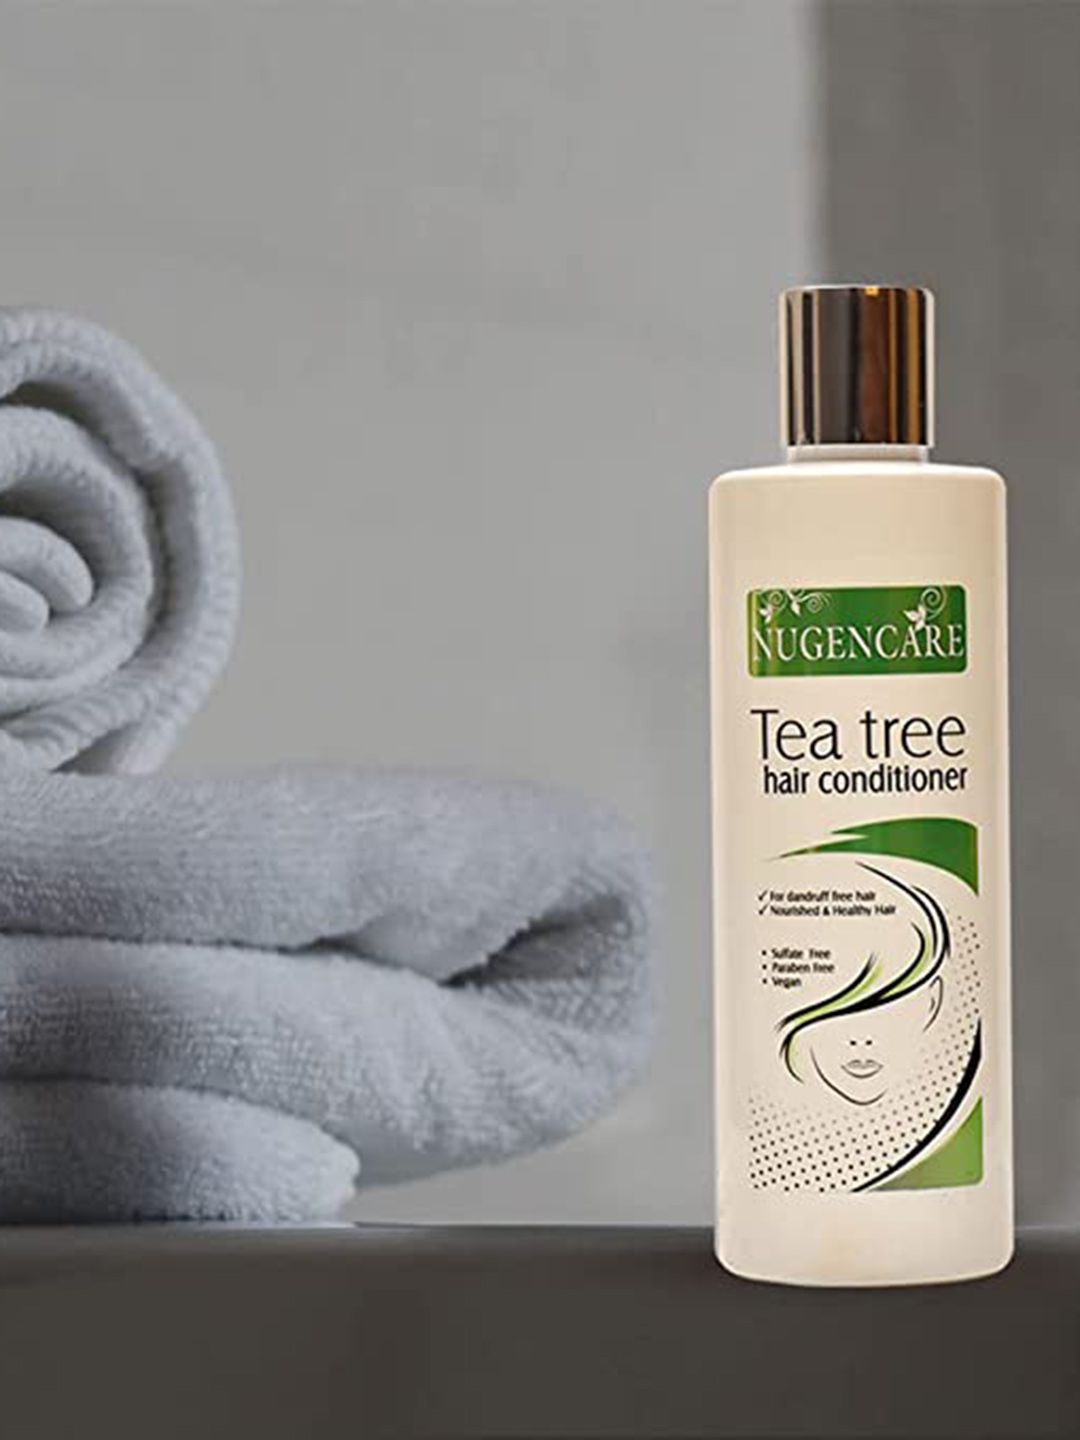 NUGENCARE Tea Tree Hair Conditioner 250 ml Price in India